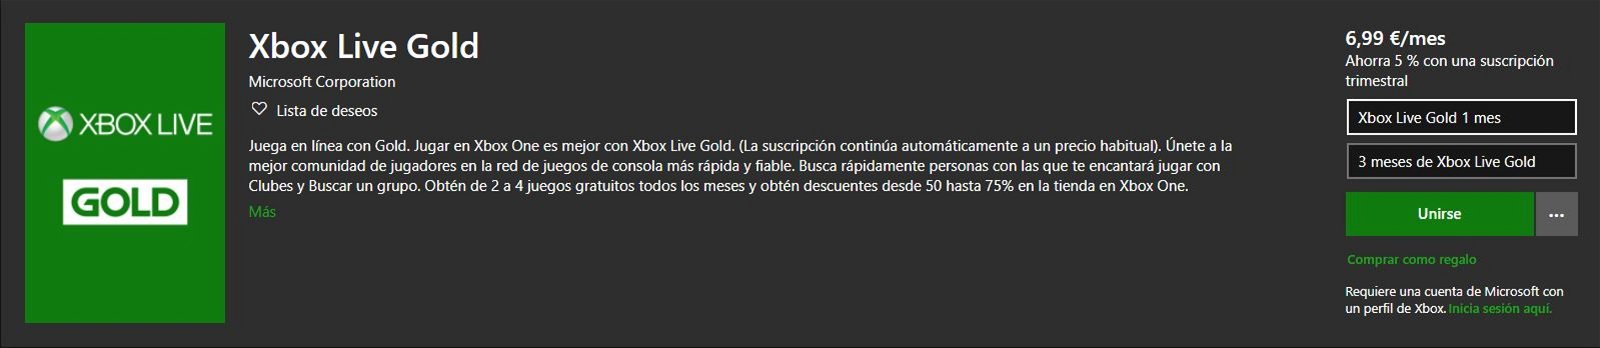 Suscripciones de Xbox Live Gold